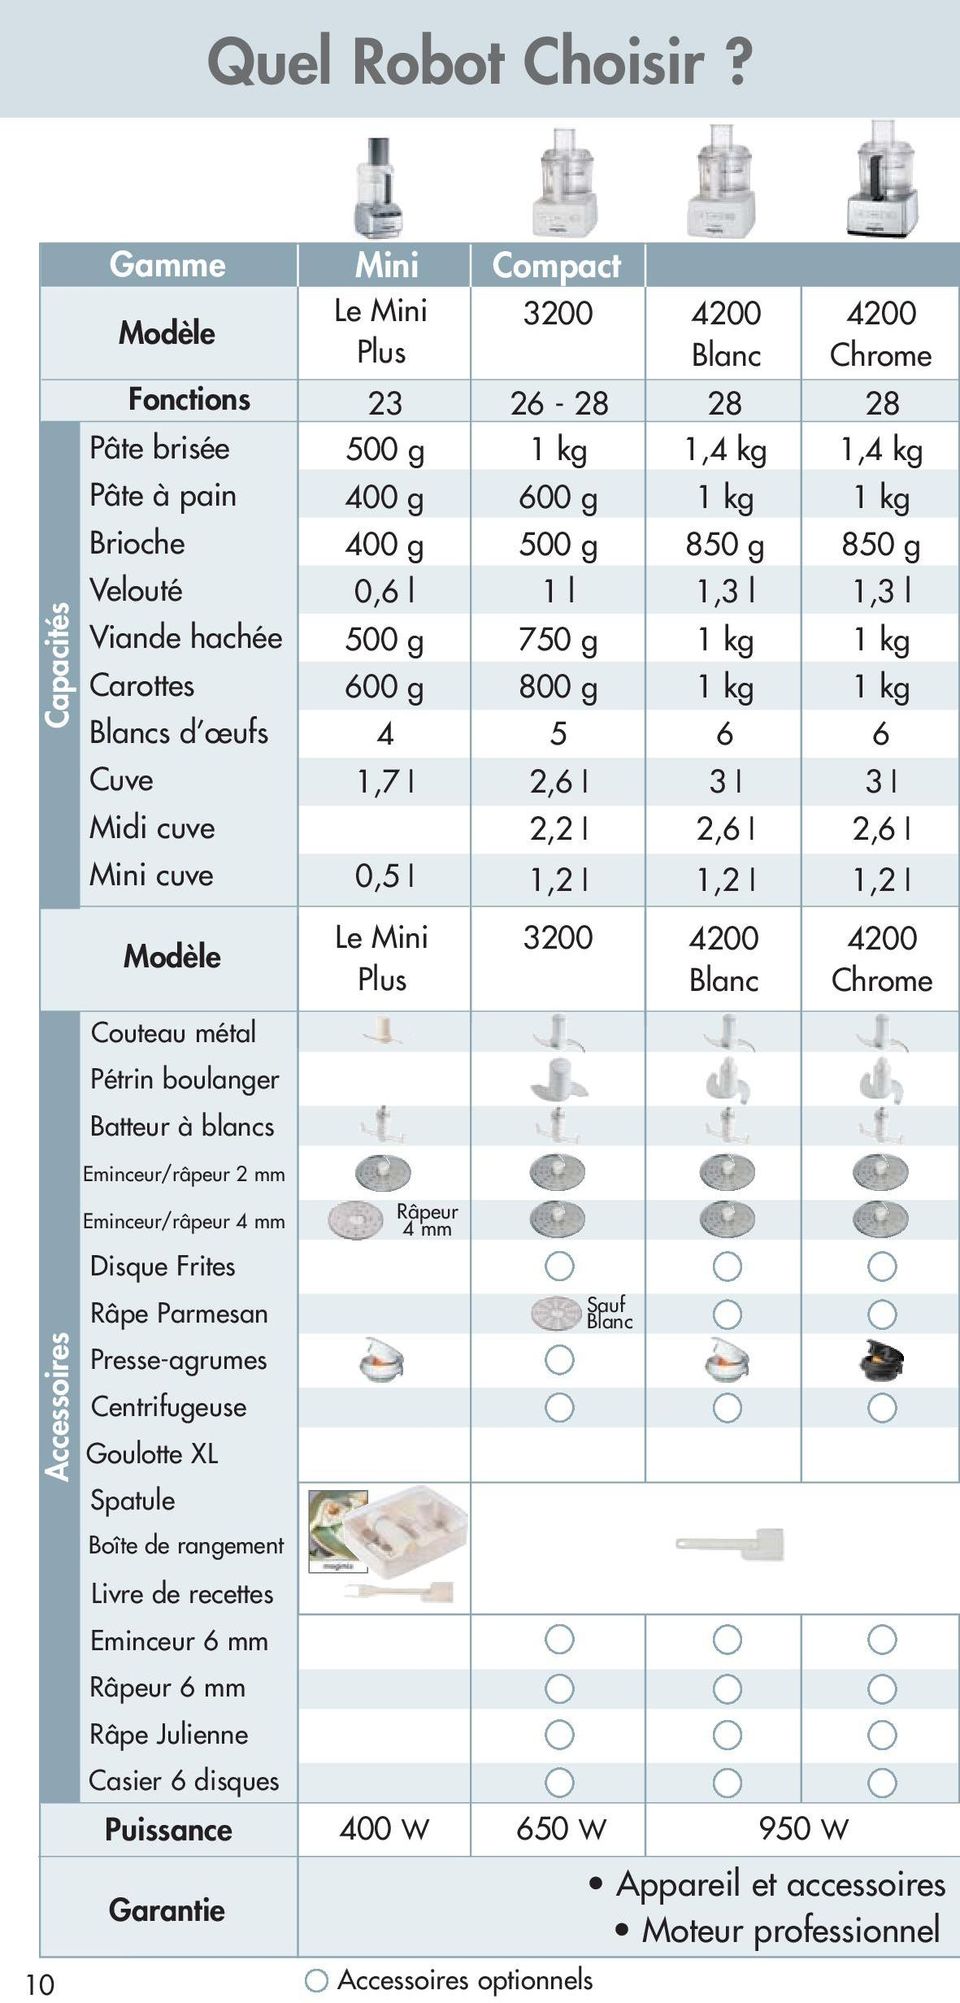 Viande hachée Carottes Blancs d œufs 0,6 l 500 g 600 g 4 l 750 g 800 g 5,3 l kg kg 6,3 l kg kg 6 Cuve,7 l 2,6 l 3 l 3 l Midi cuve 2,2 l 2,6 l 2,6 l Mini cuve 0,5 l,2 l,2 l,2 l Modèle Le Mini lus 3200